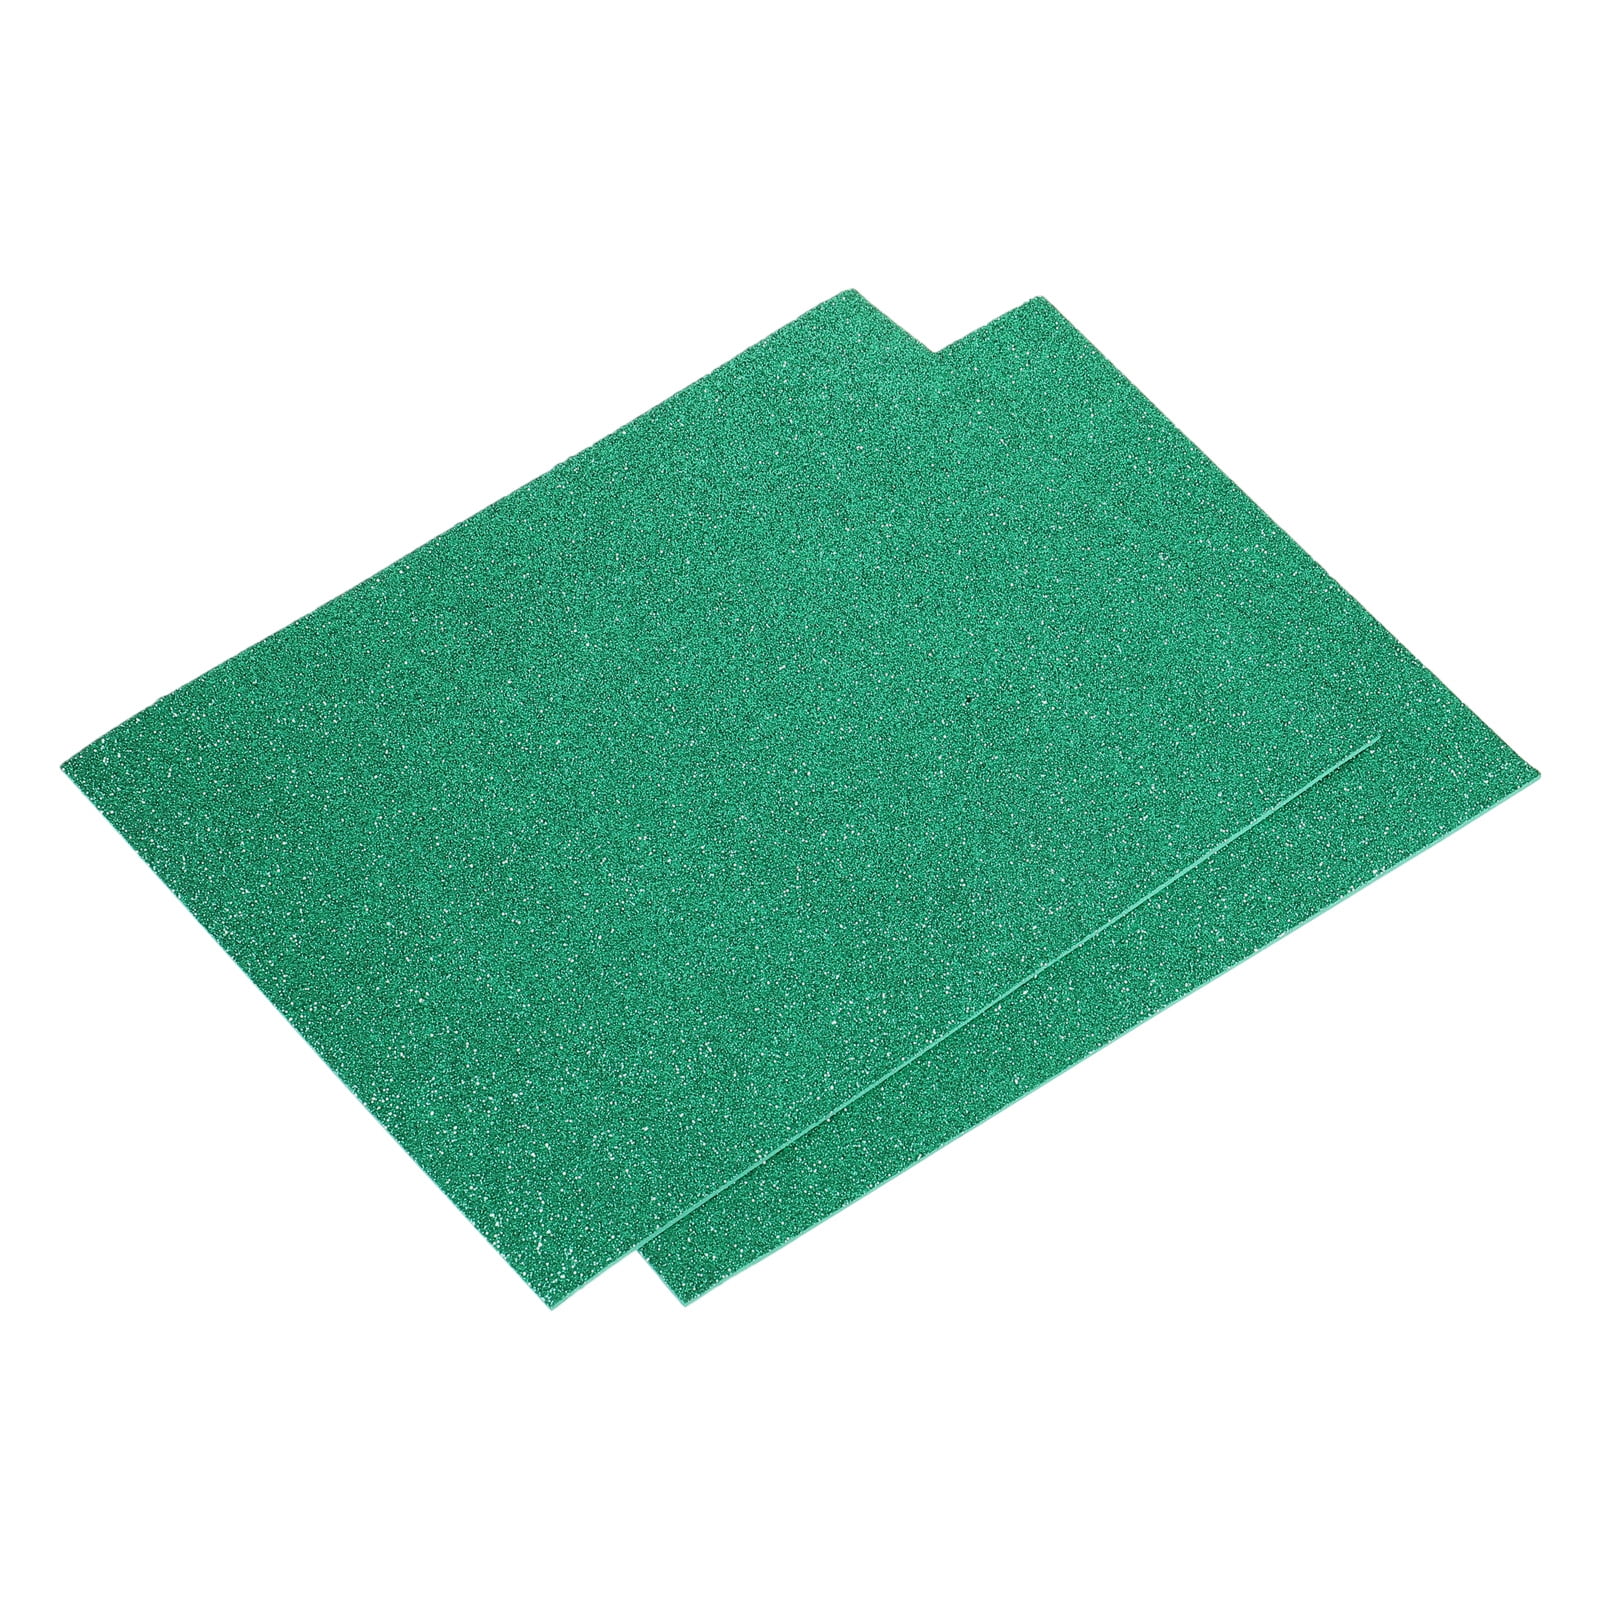 Green DIY Glitter Foam Sheet Craft ideas, Green DIY Glitter Foam Sheet  Craft ideas, By SmirchS